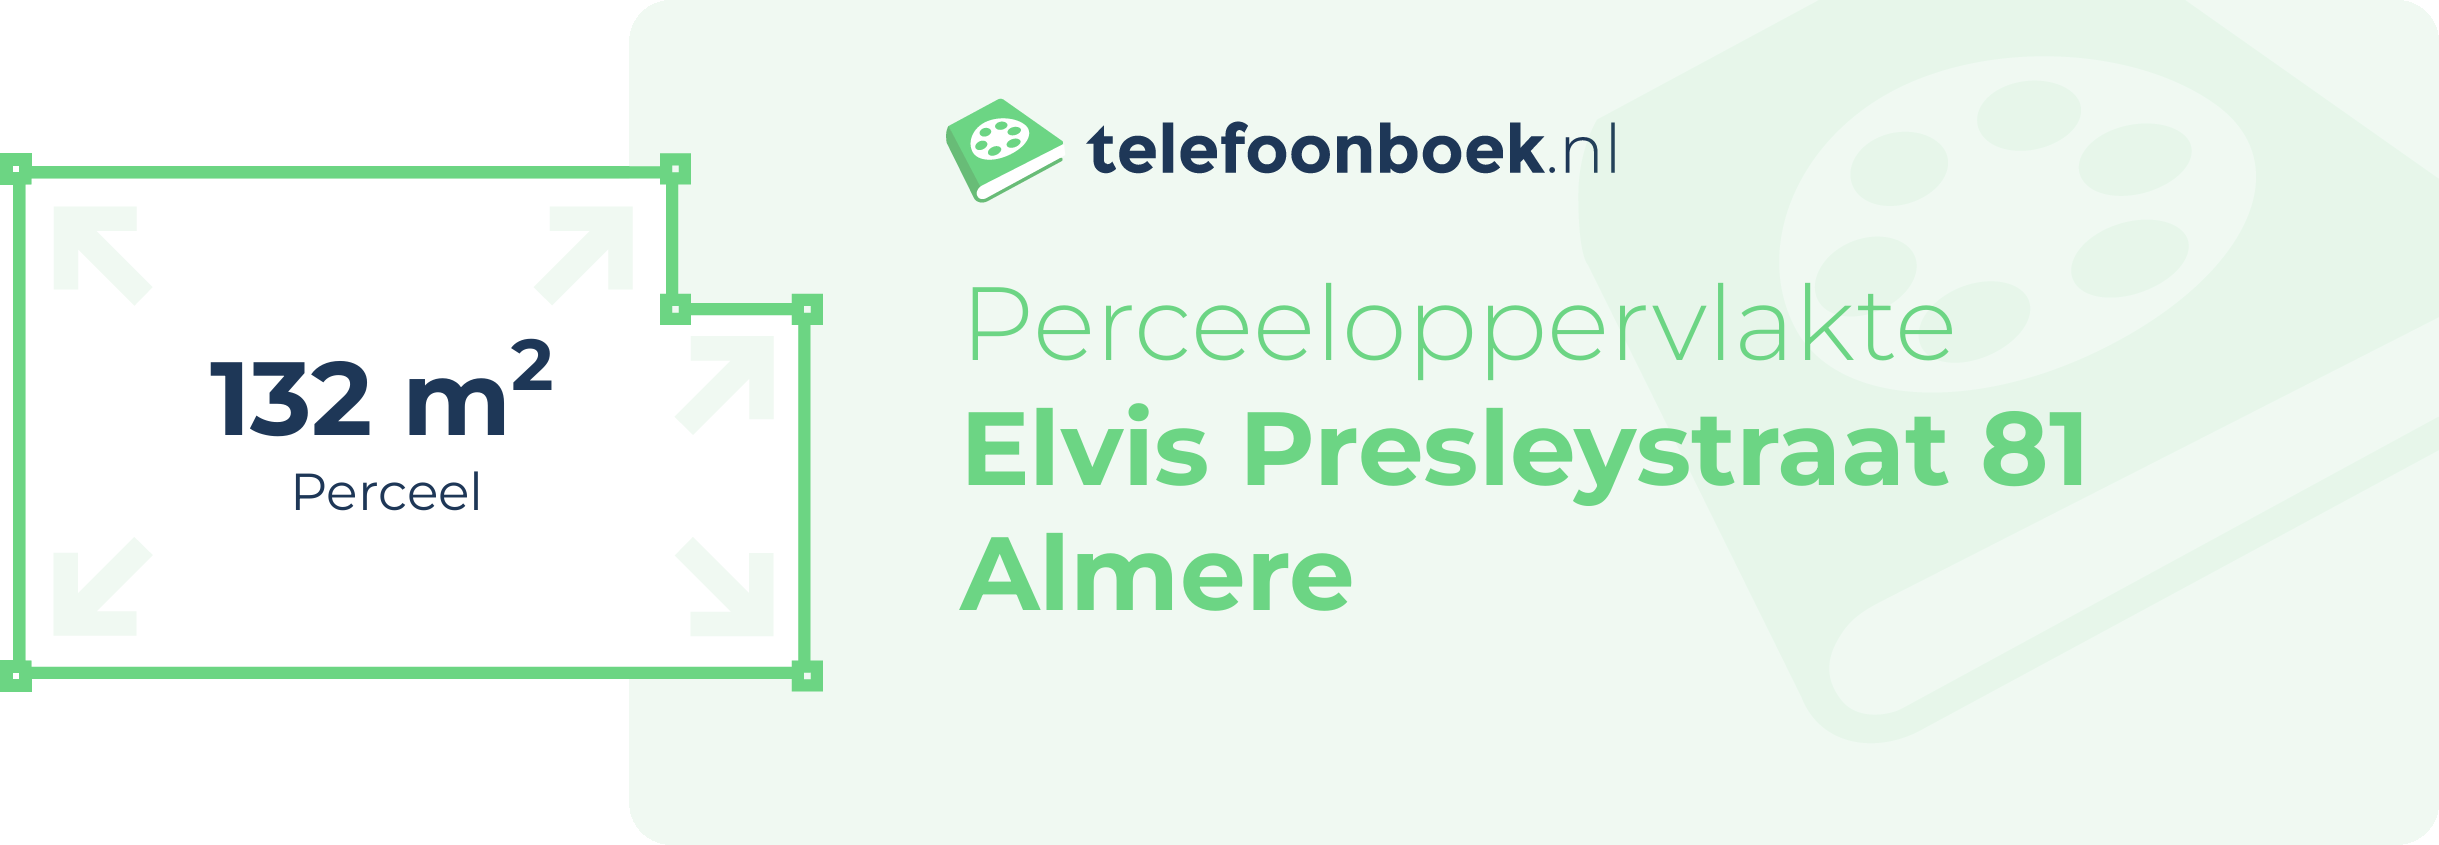 Perceeloppervlakte Elvis Presleystraat 81 Almere